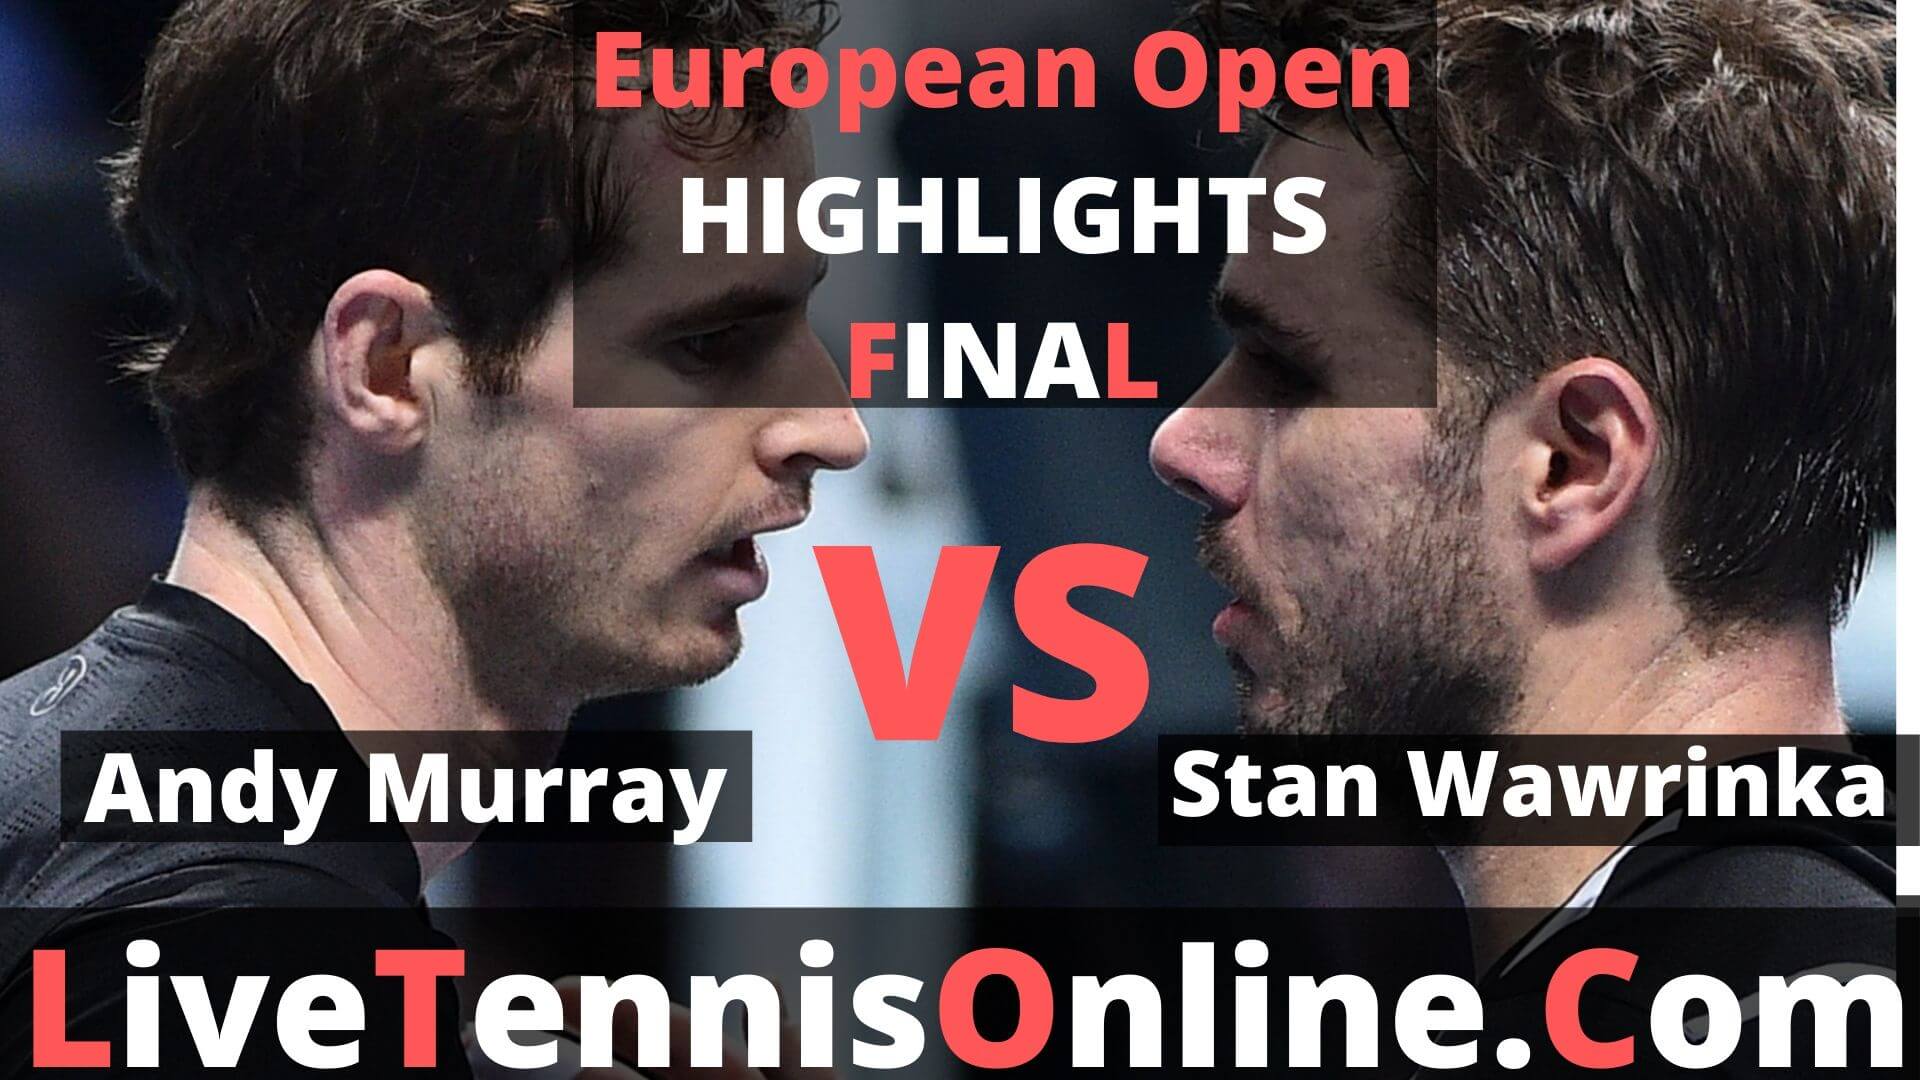 Stan Wawrinka Vs Andy Murray Highlights 2019 European Open Final